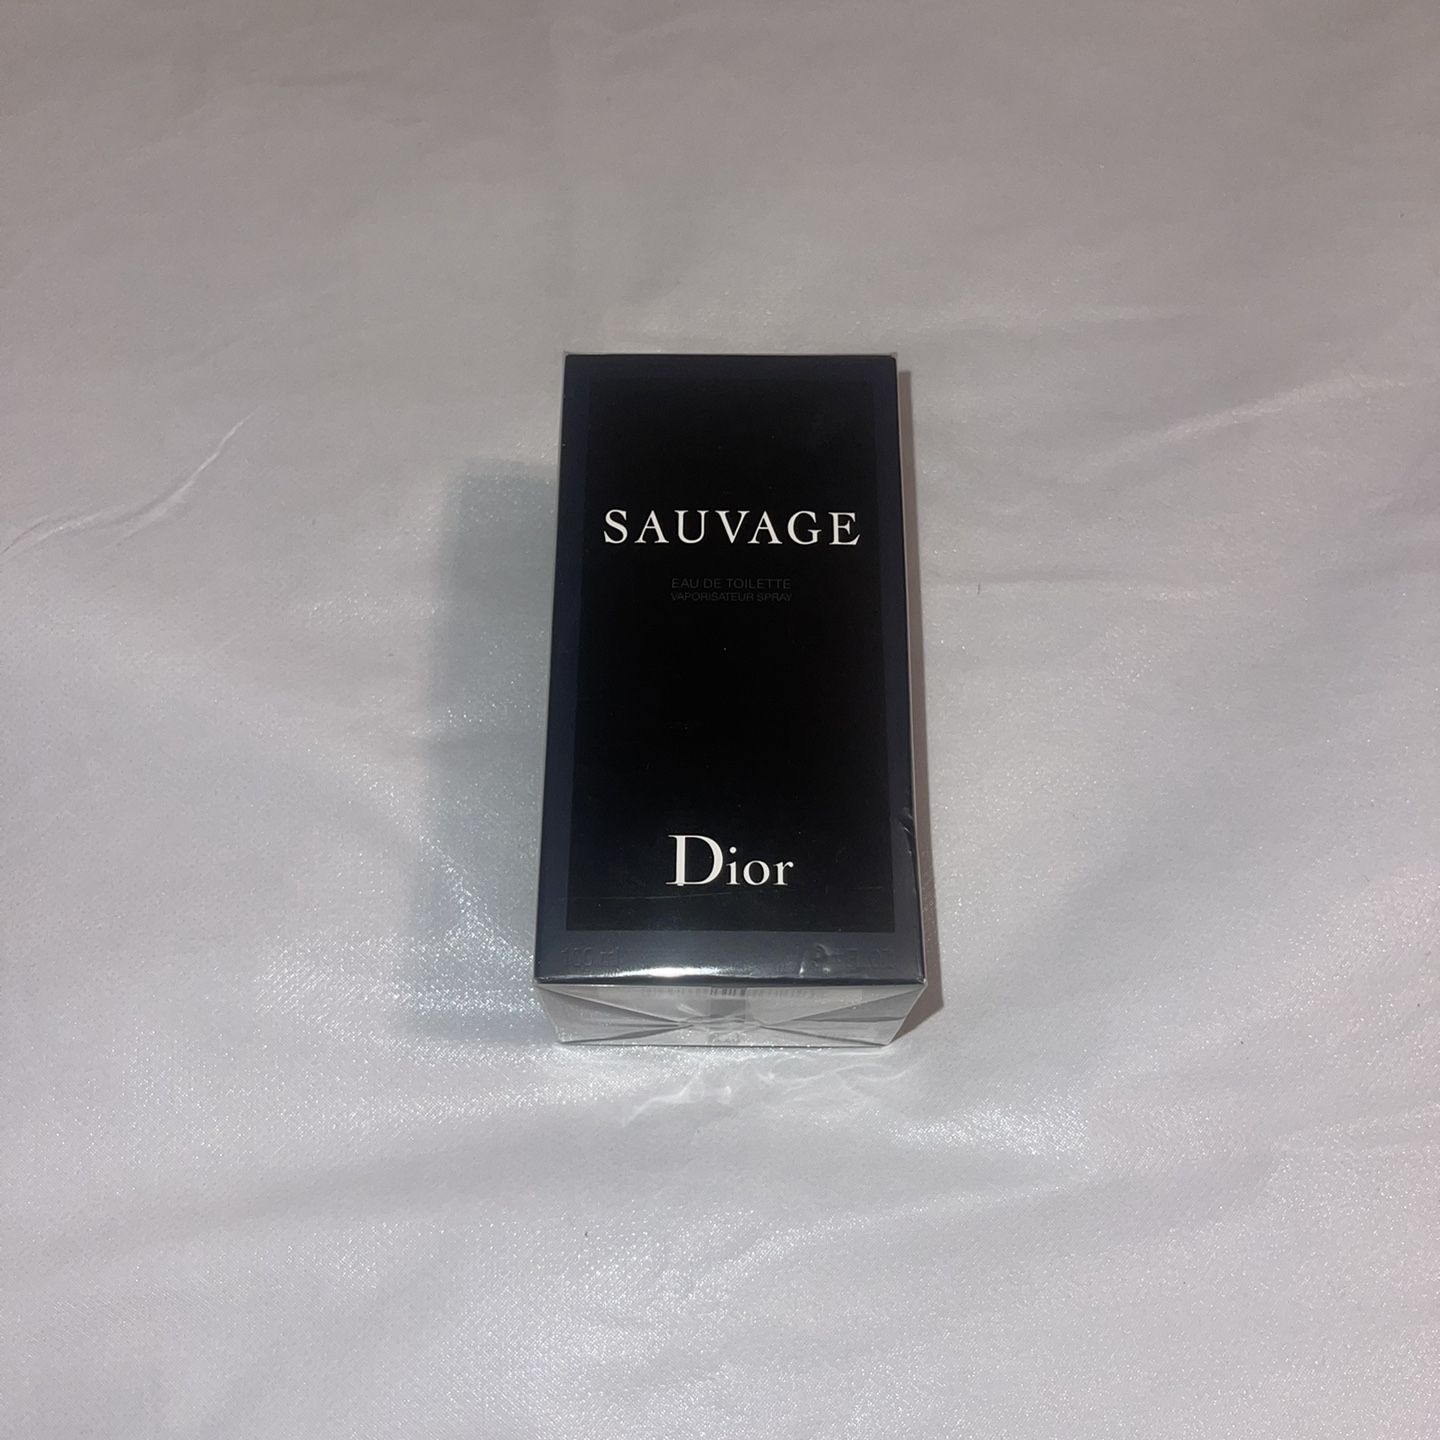 Dior Sauvage Eau De Toilette